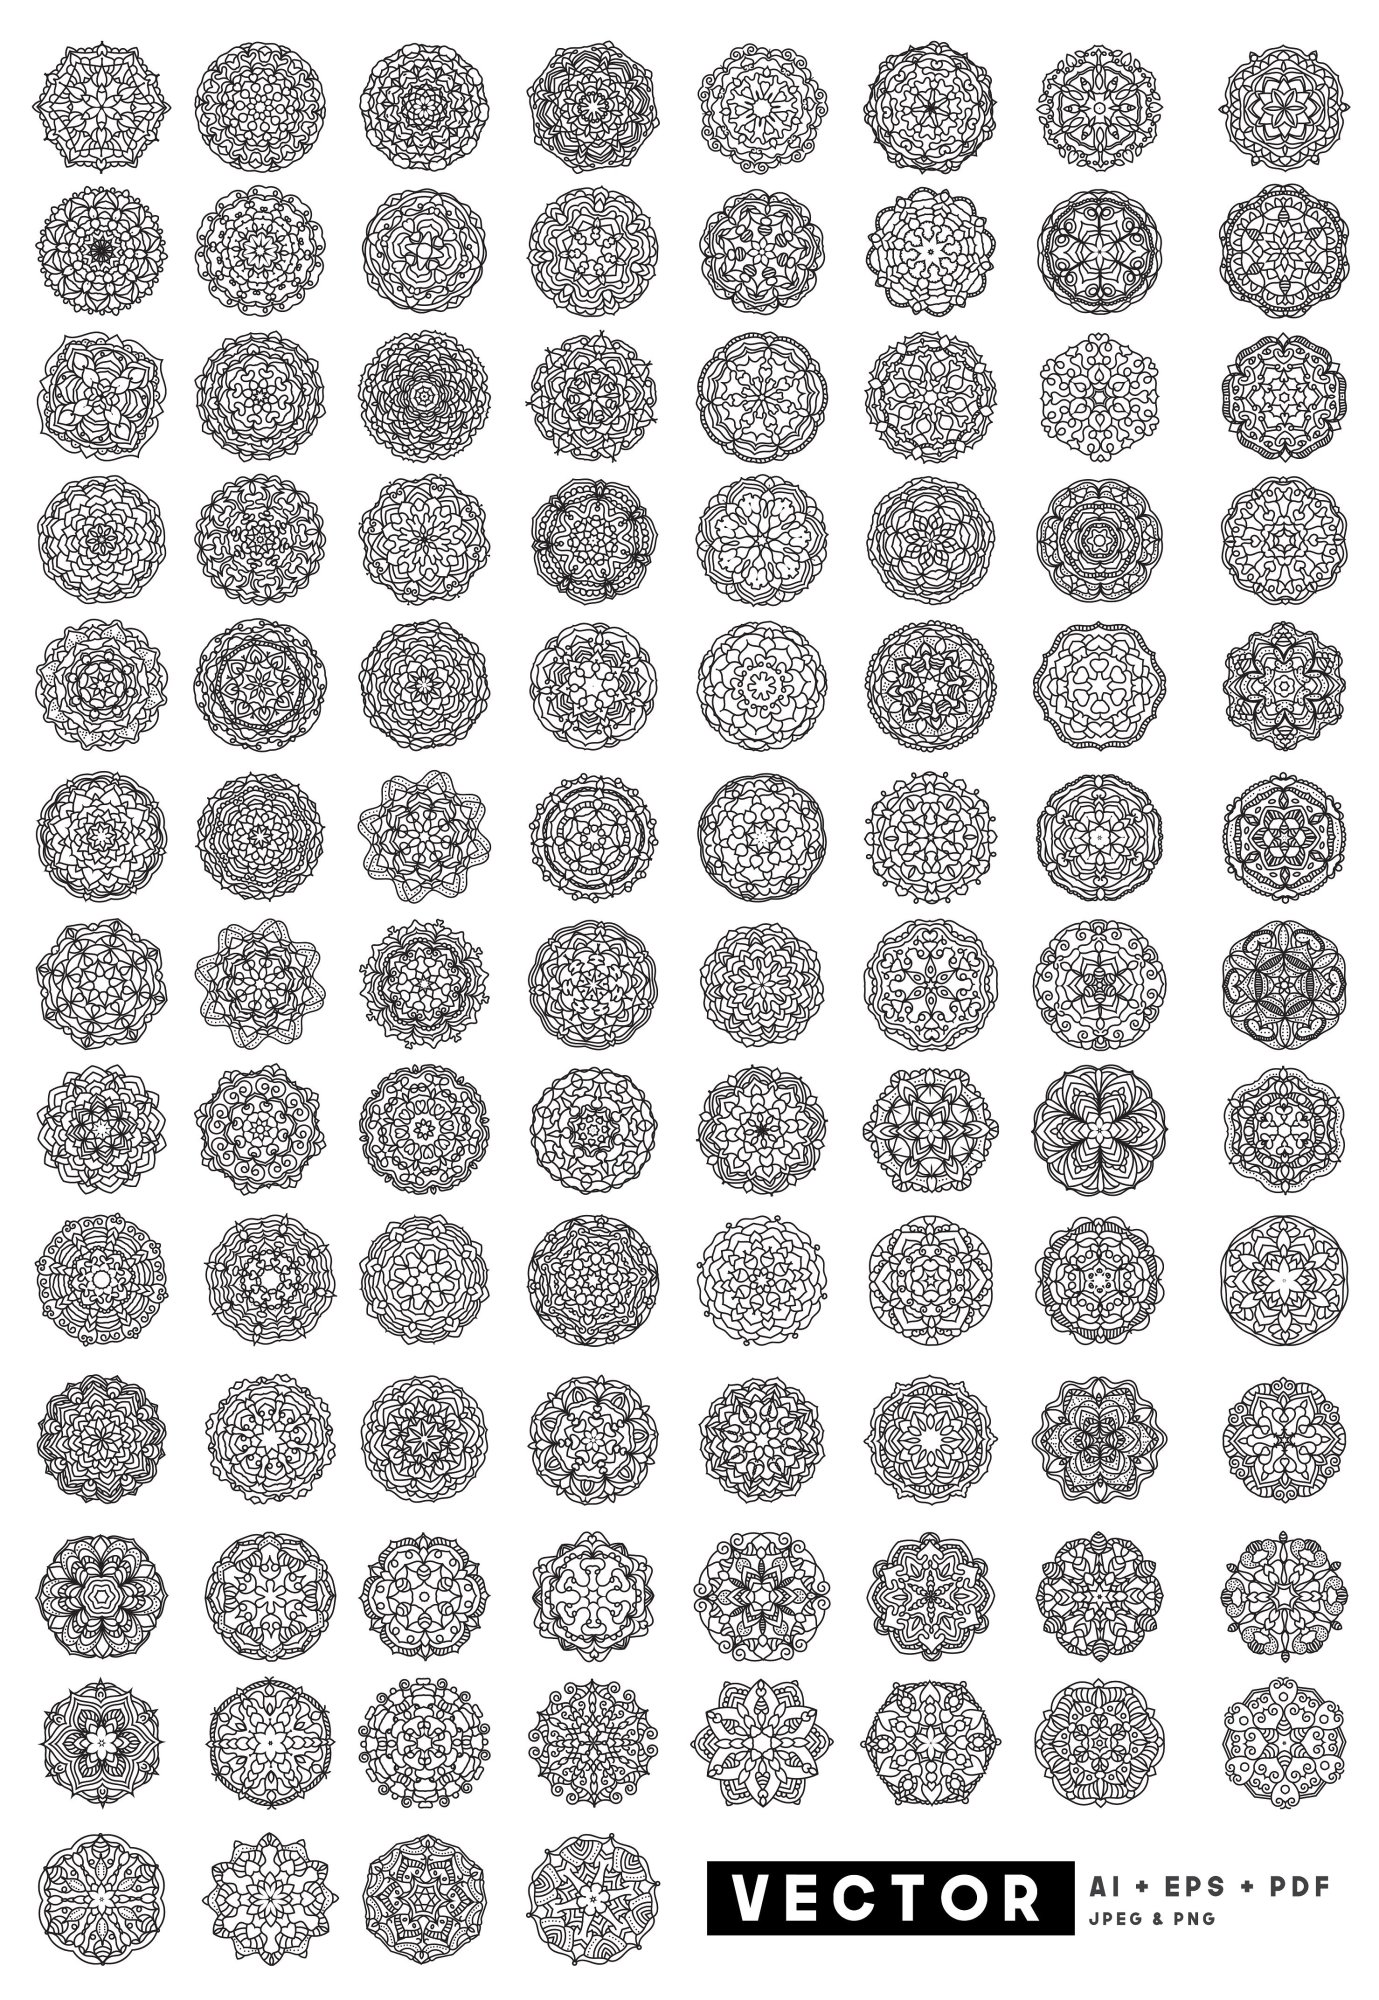 Download 100 Vector Mandala Floral Ornaments